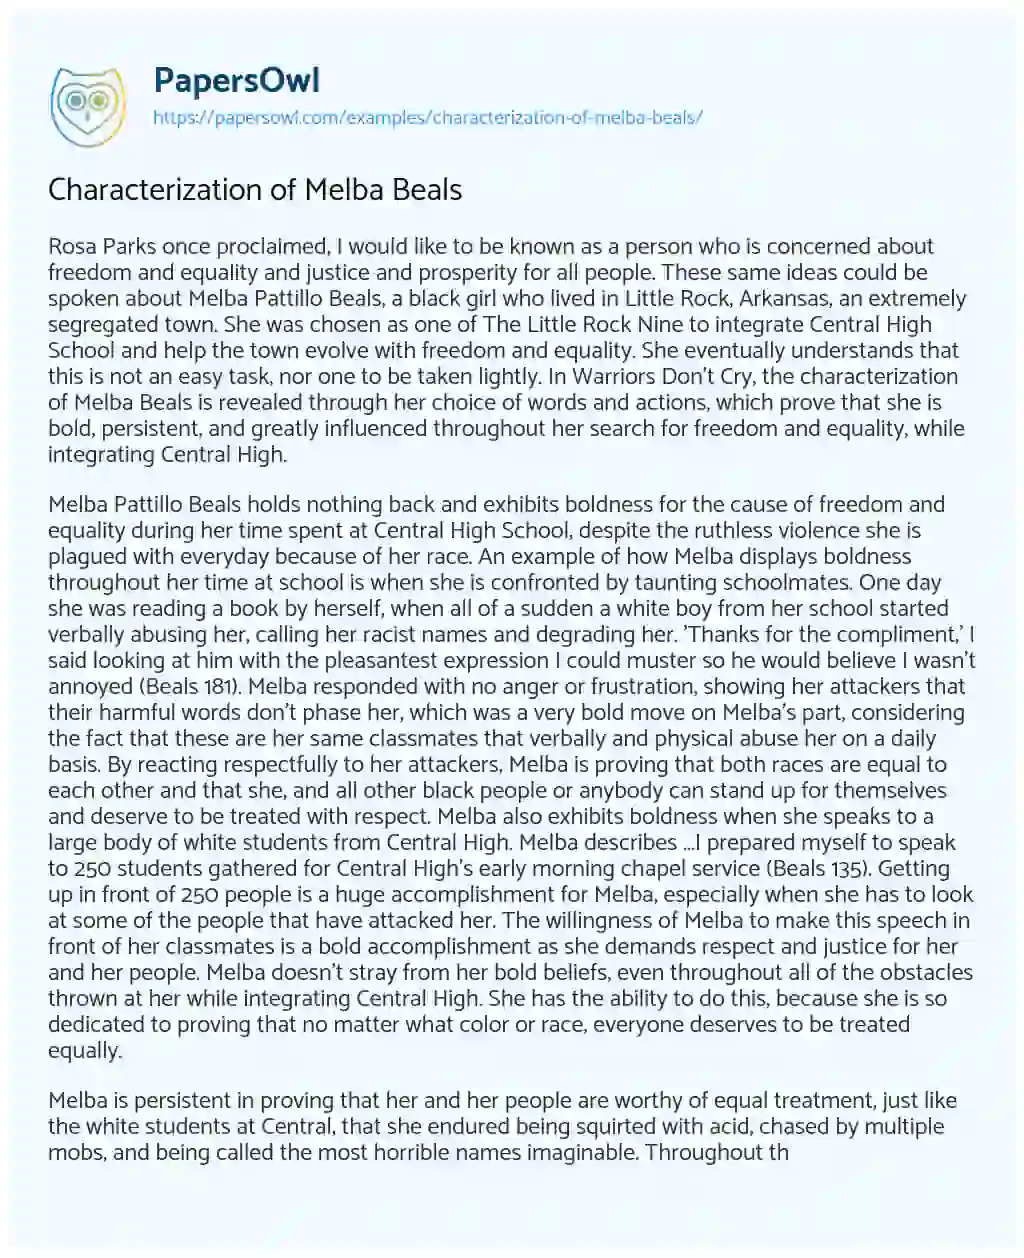 Characterization of Melba Beals essay